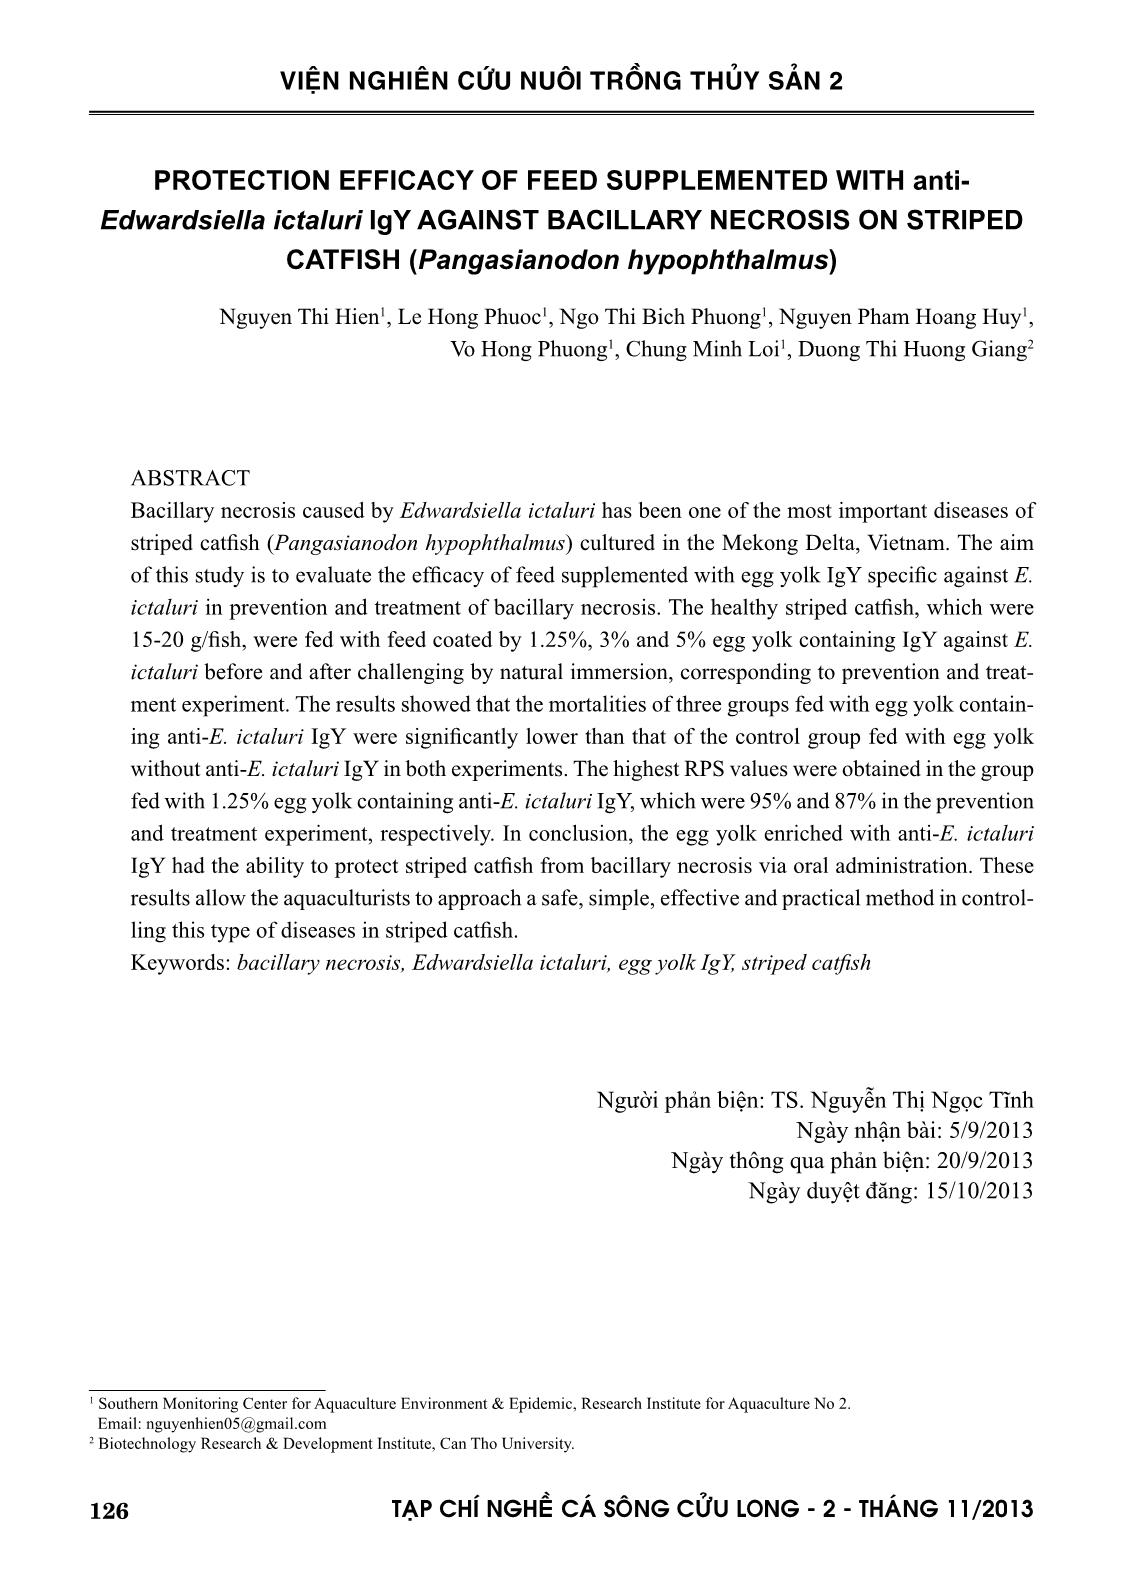 Thử nghiệm hiệu quả bảo vệ của thức ăn bổ sung kháng thể kháng E. ictaluri đối với bệnh gan thận mủ trên cá tra Pangasianodon hypophthalmus trang 9